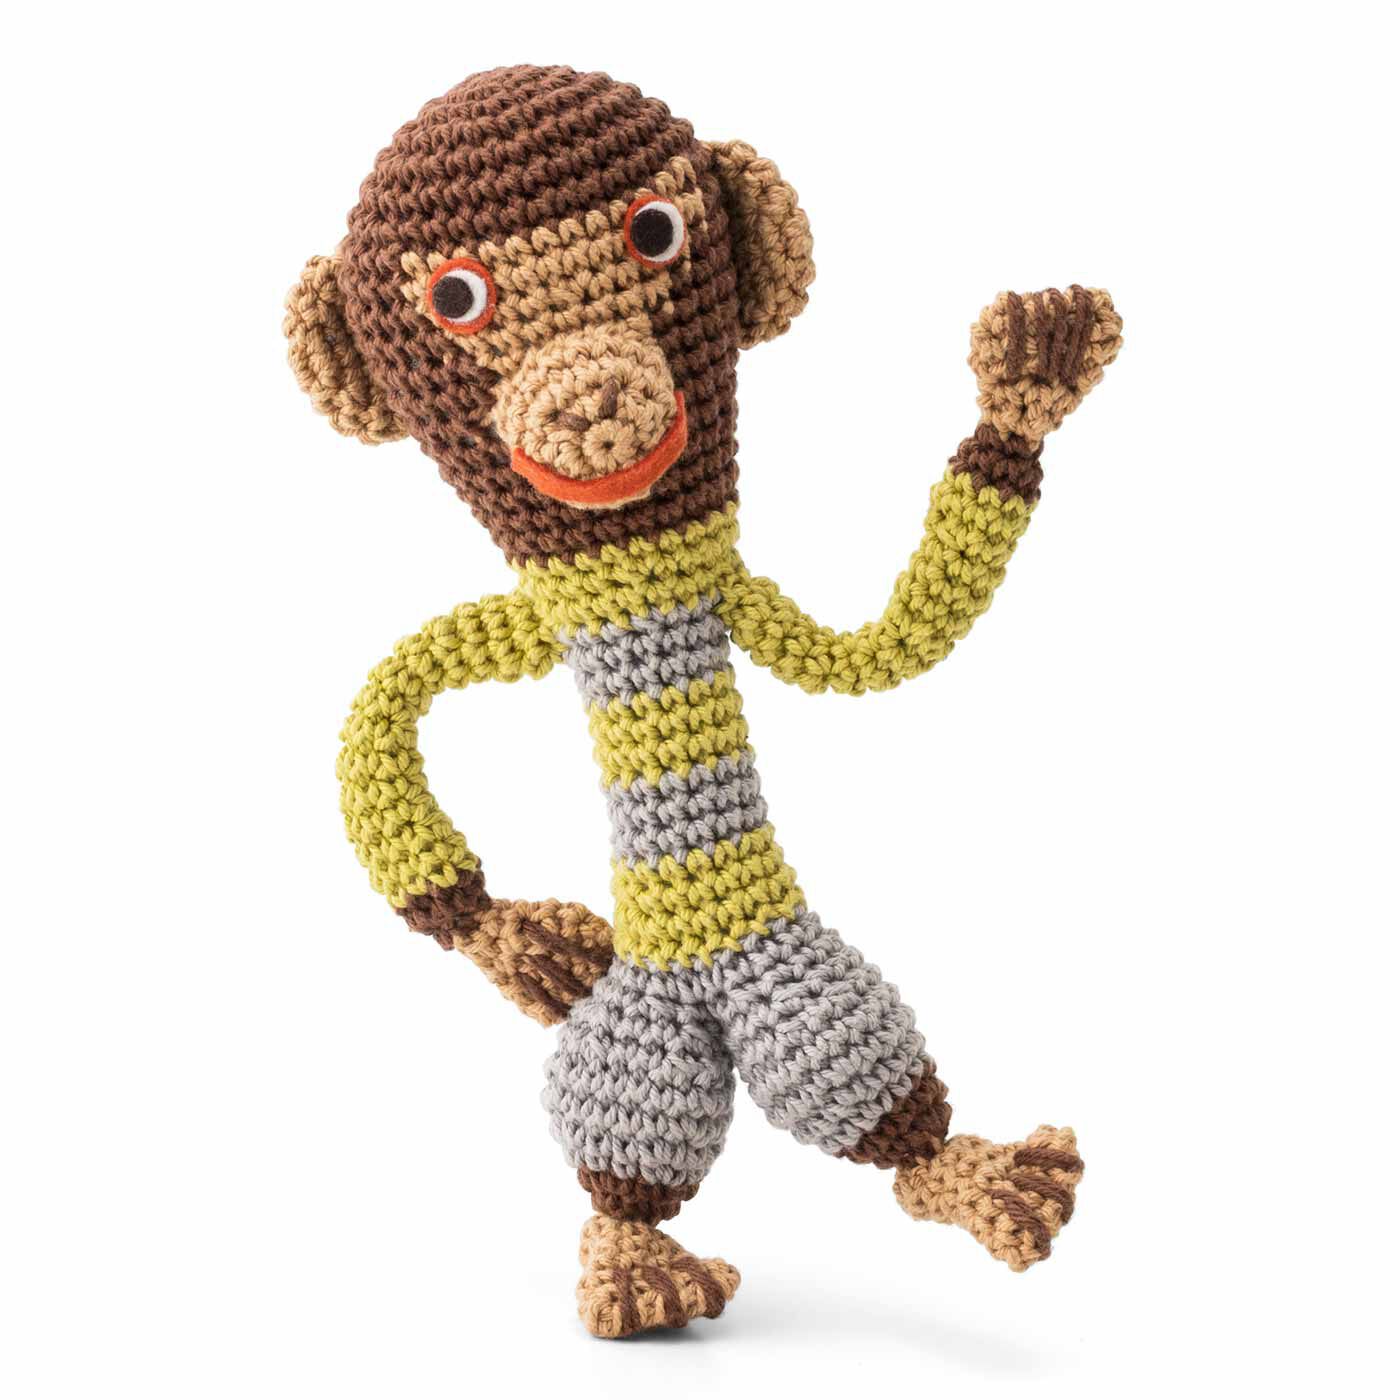 クチュリエ|フランス生まれのヴィラージュ仲間 ChibiRuさんのかぎ針編みぐるみの会|チンパンジーのマエル いたずら大好き。いつも誰かをからかっては、ぴょこたんと逃げていく。